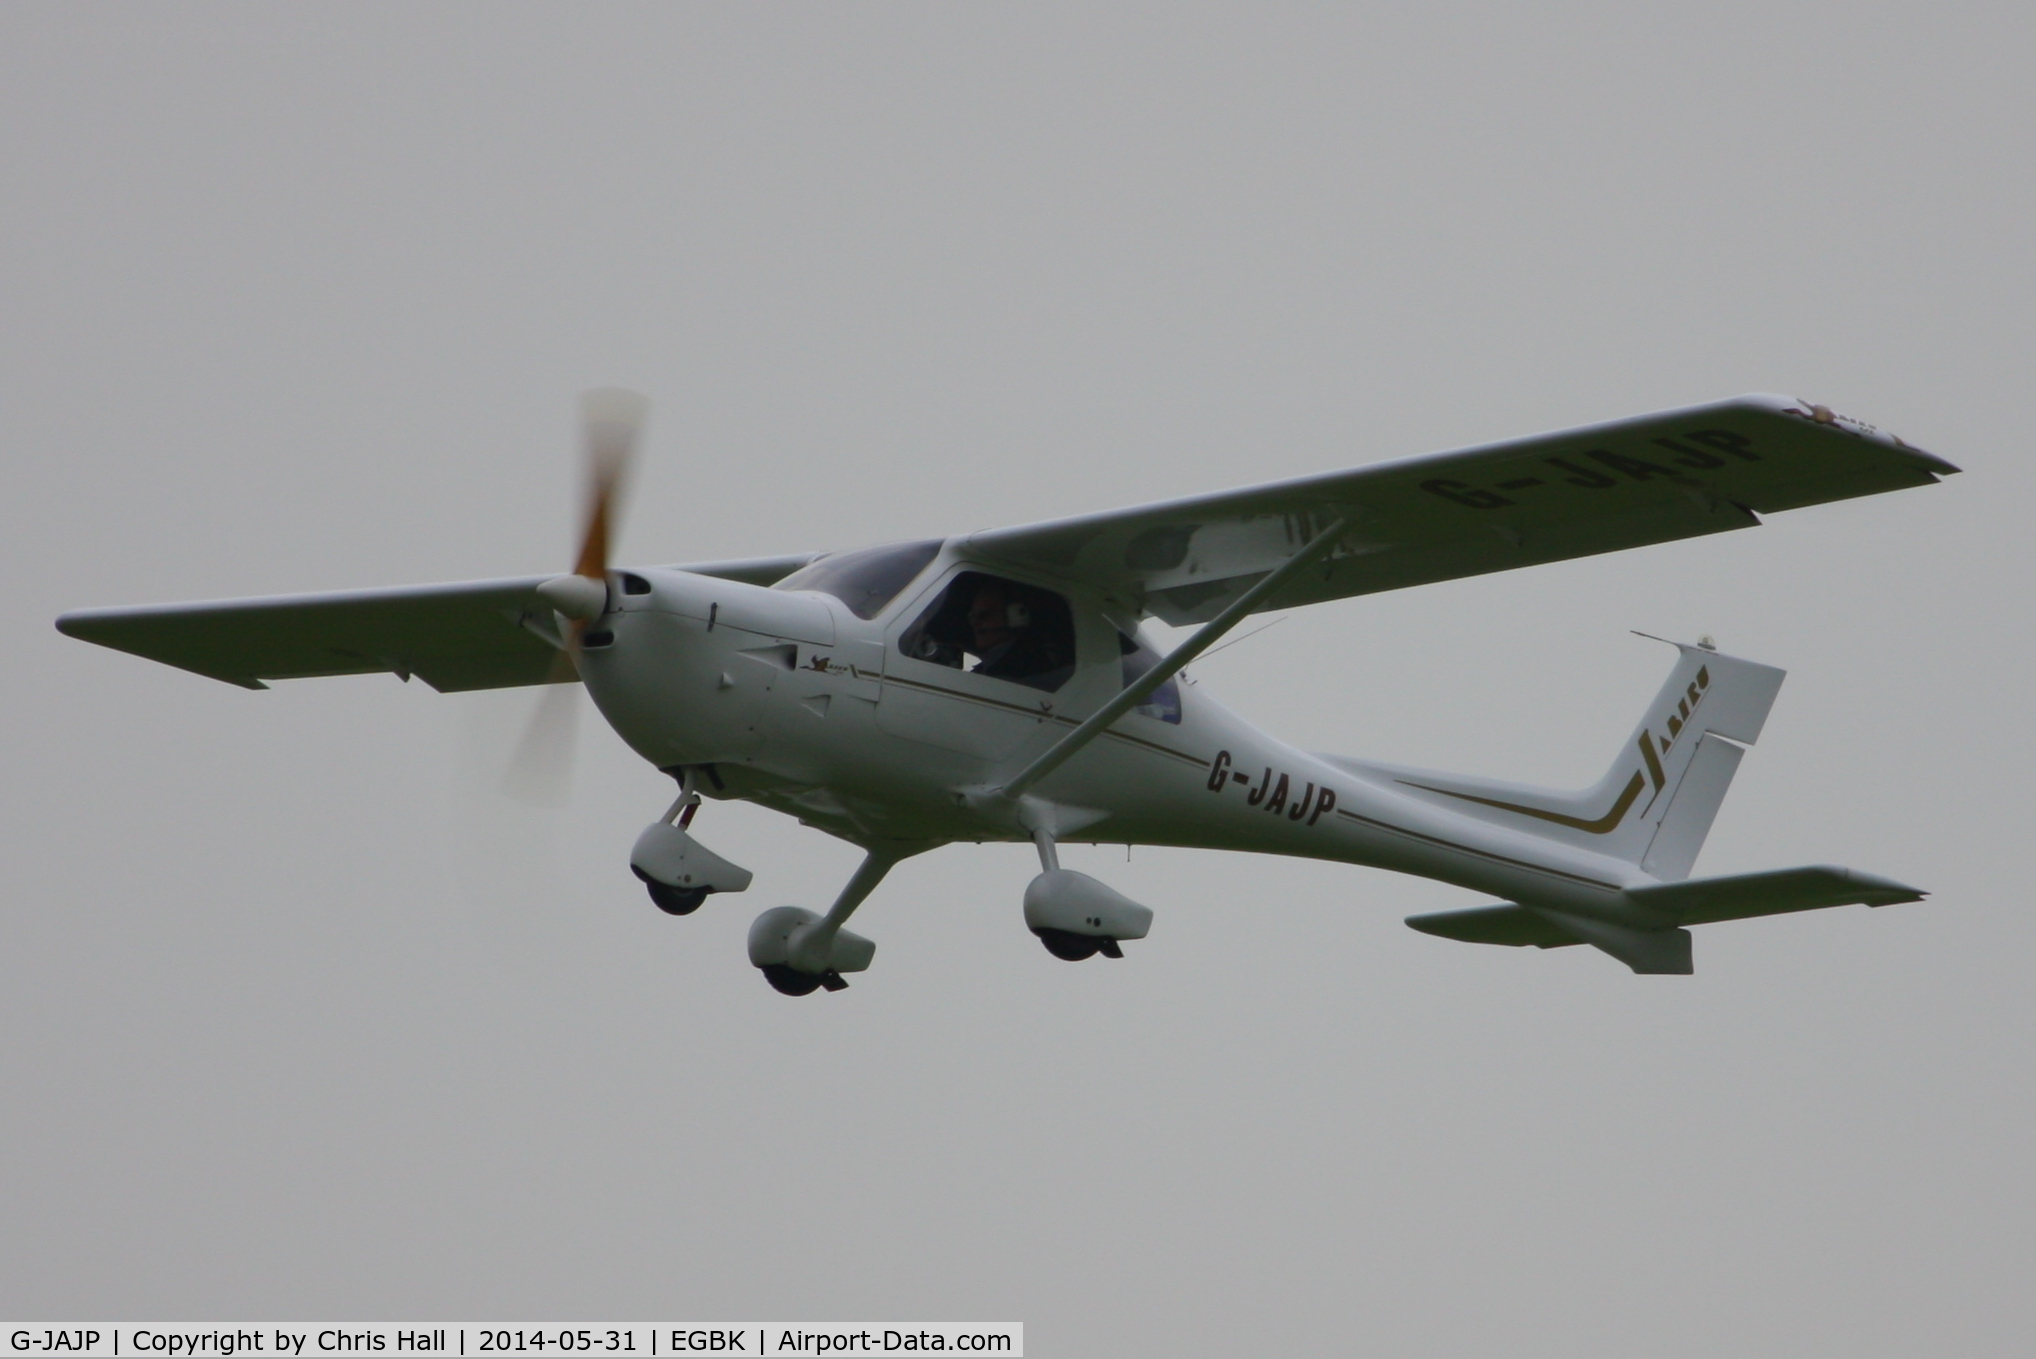 G-JAJP, 2001 Jabiru UL-450 C/N PFA 274A-13627, at AeroExpo 2014